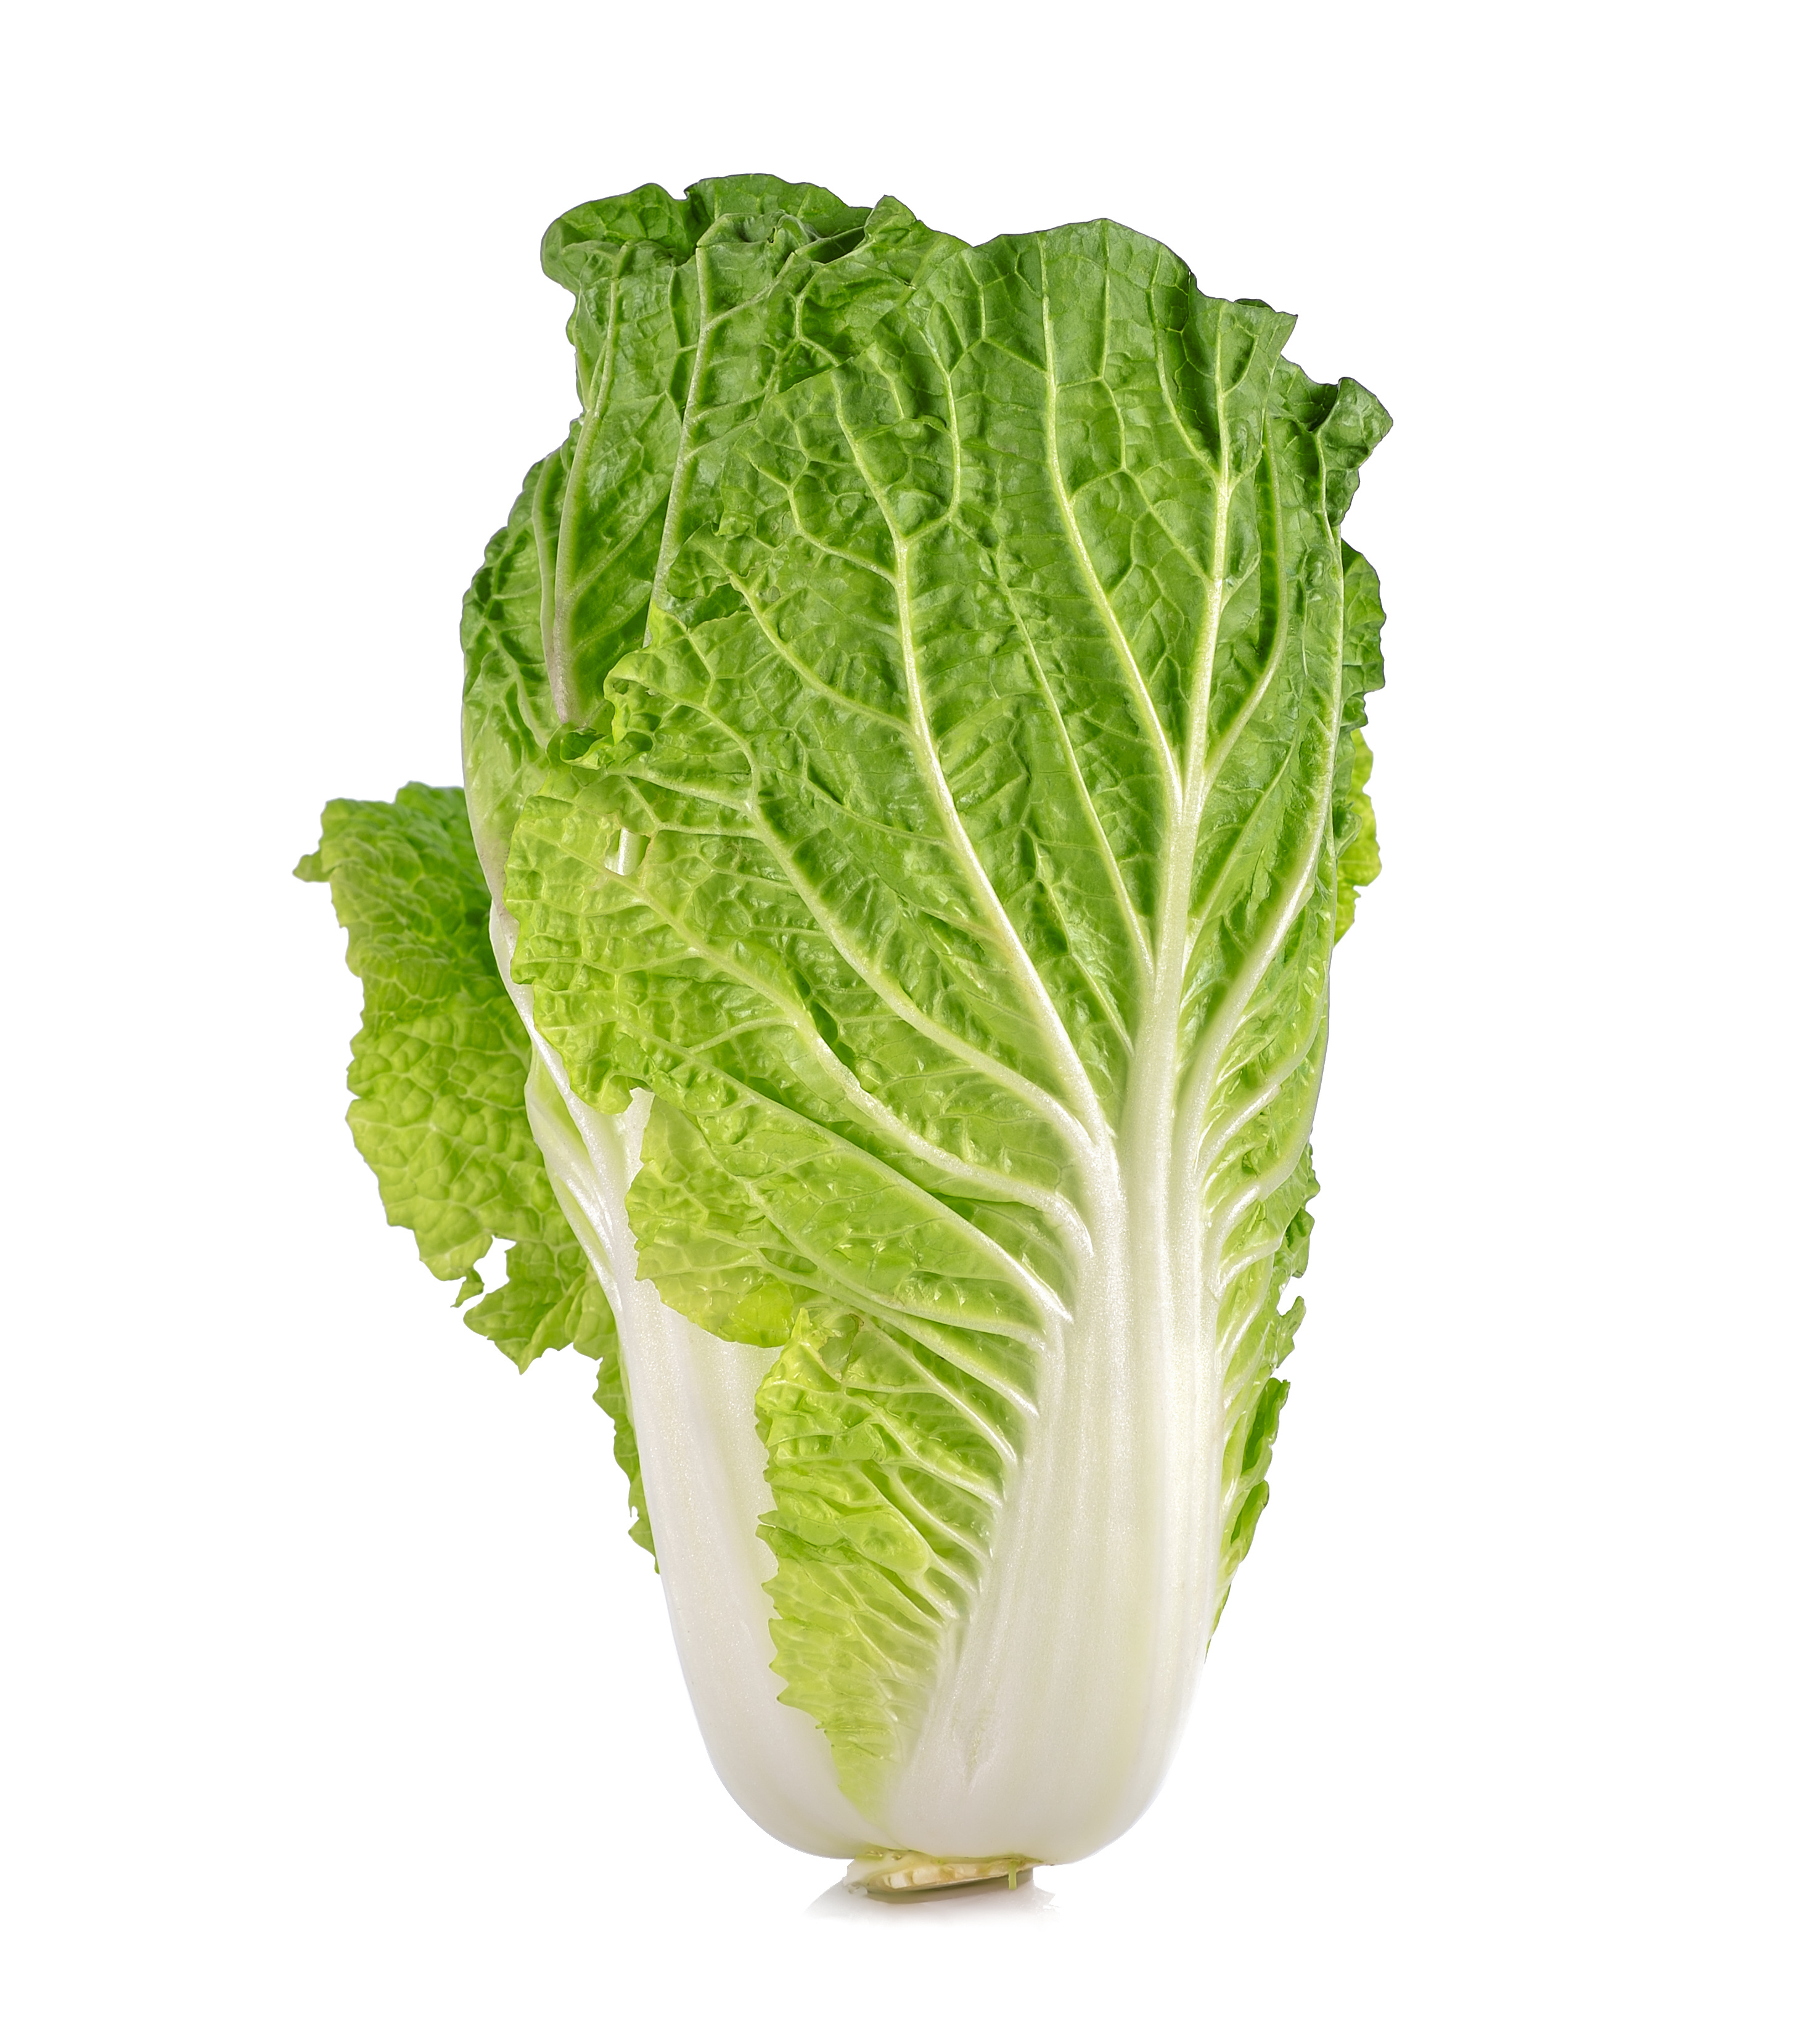 Fresh Napa Cabbage on White Background